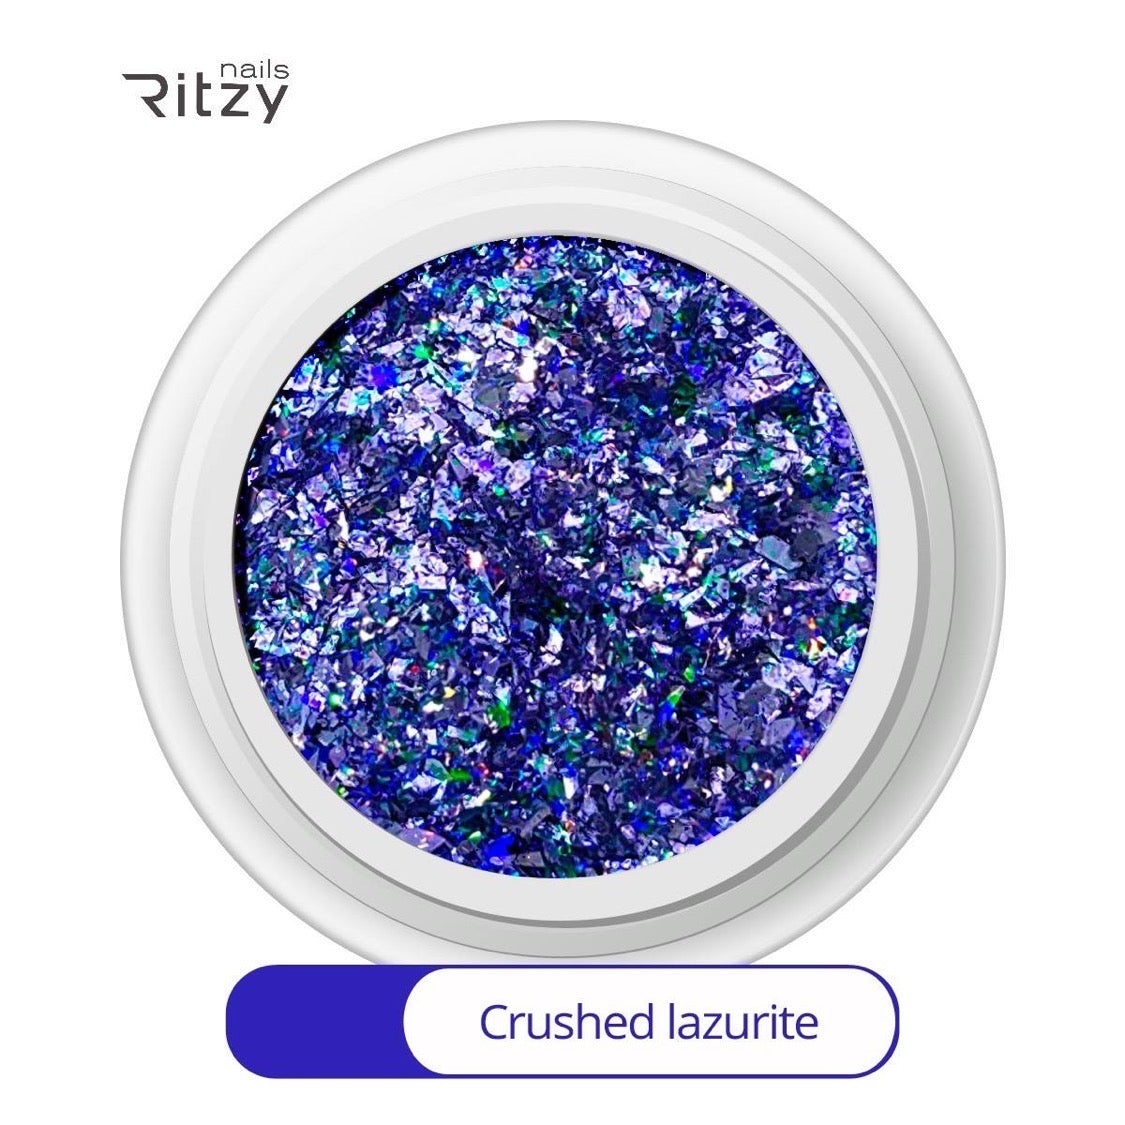 Crushed lazurite